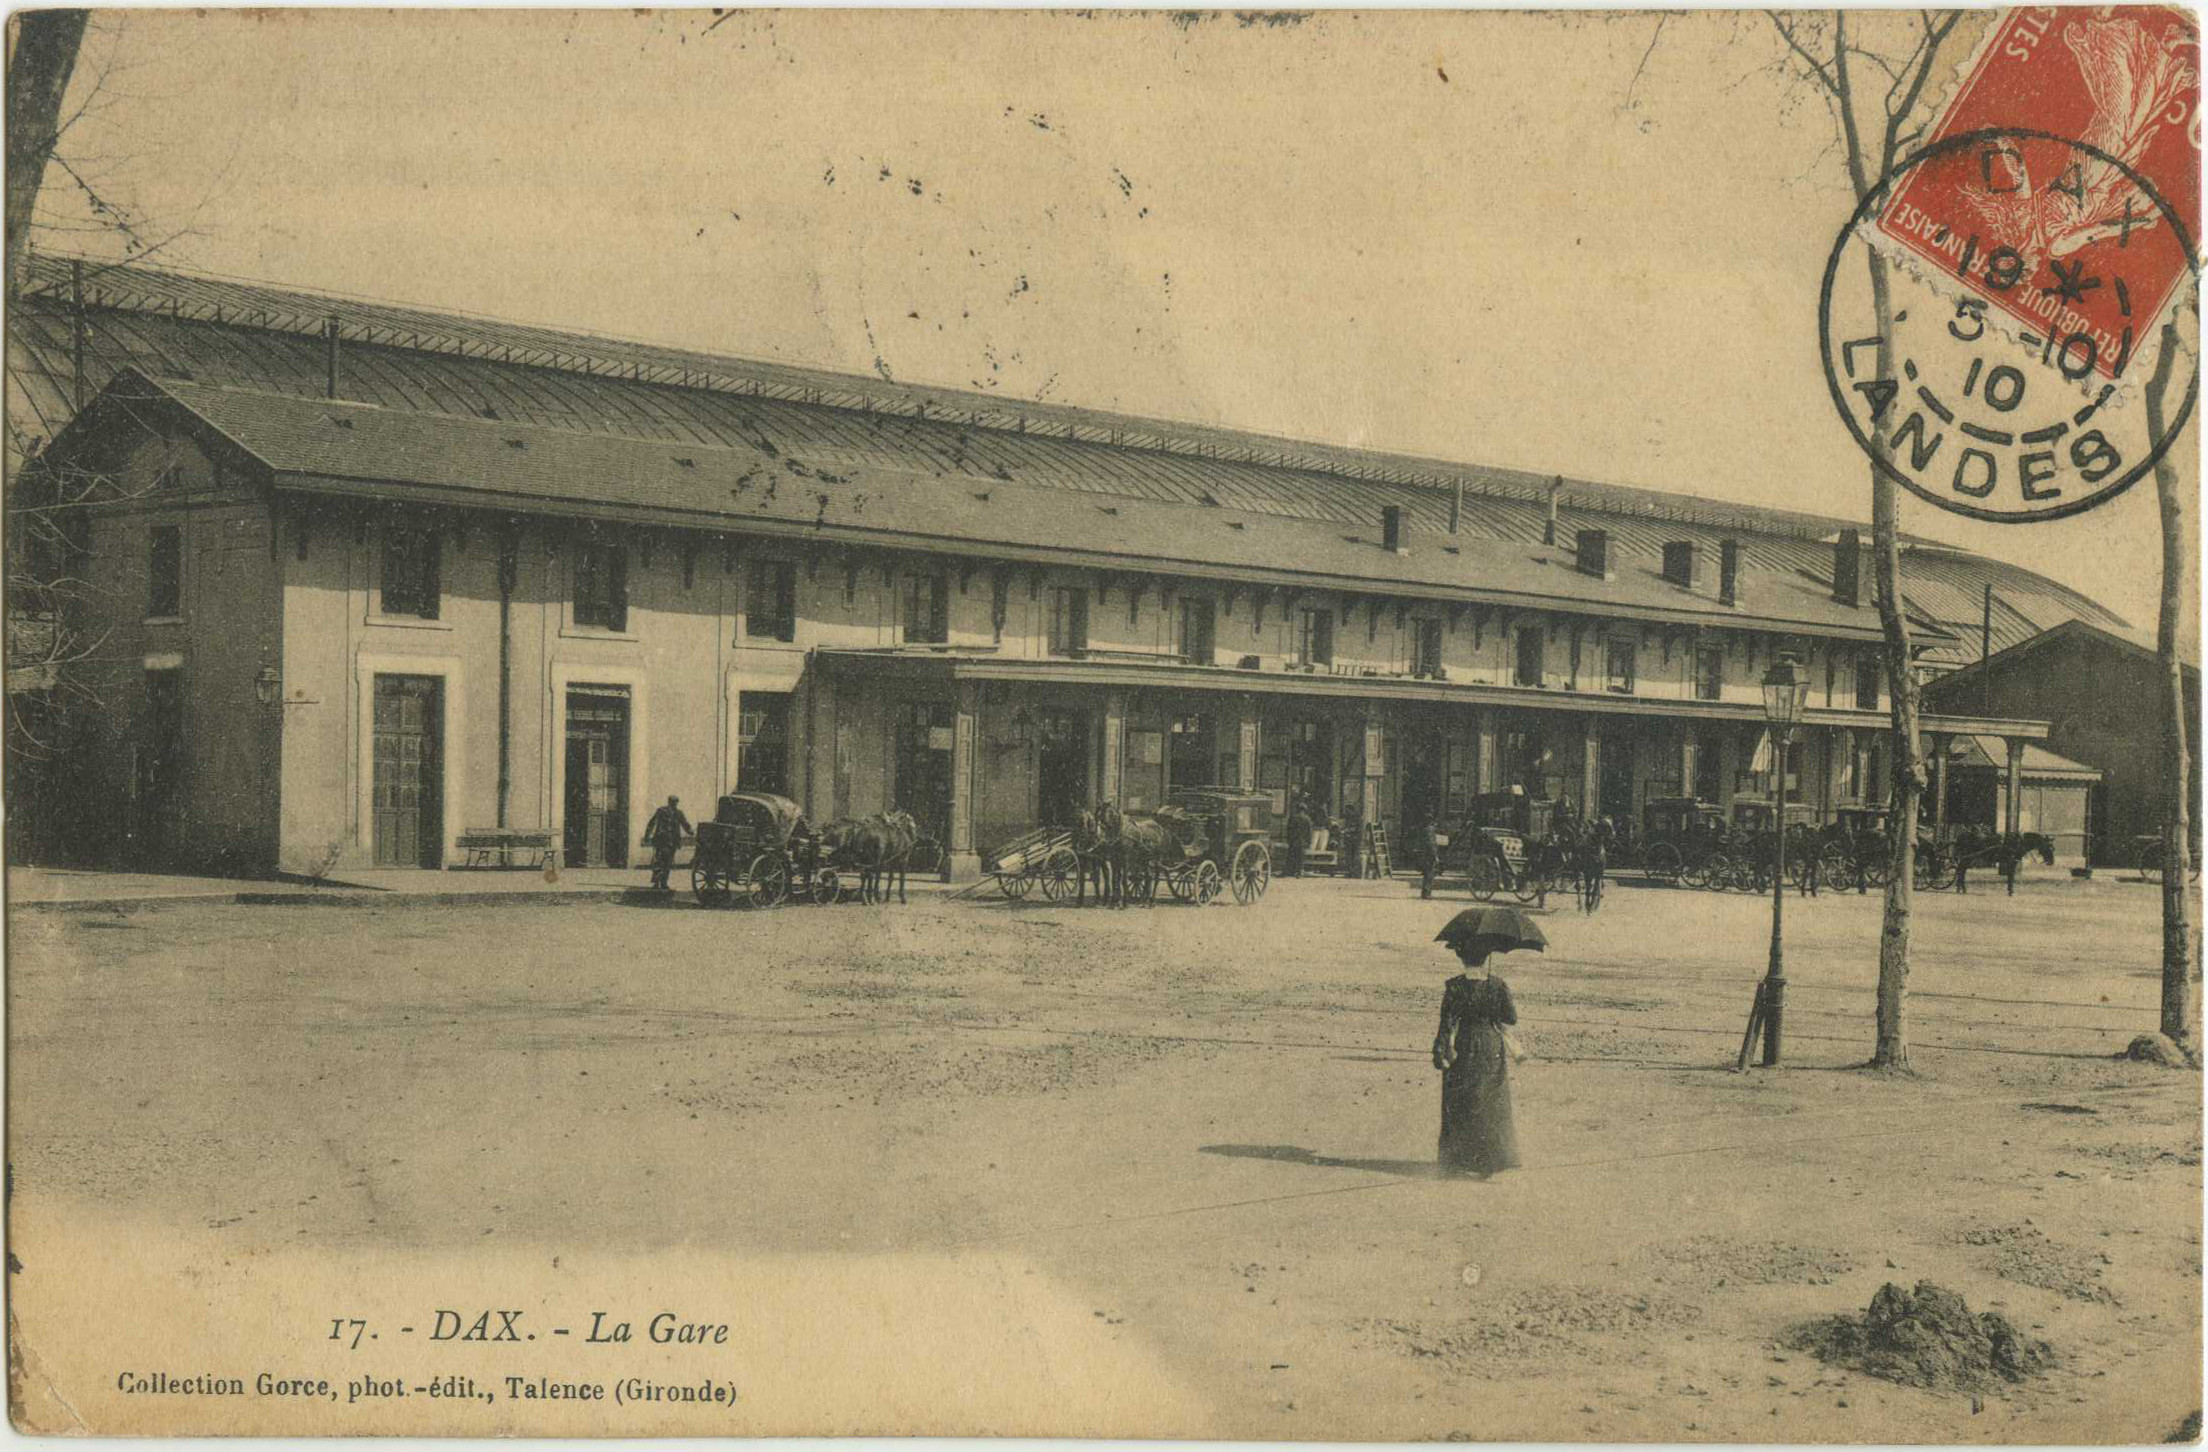 Dax - La Gare